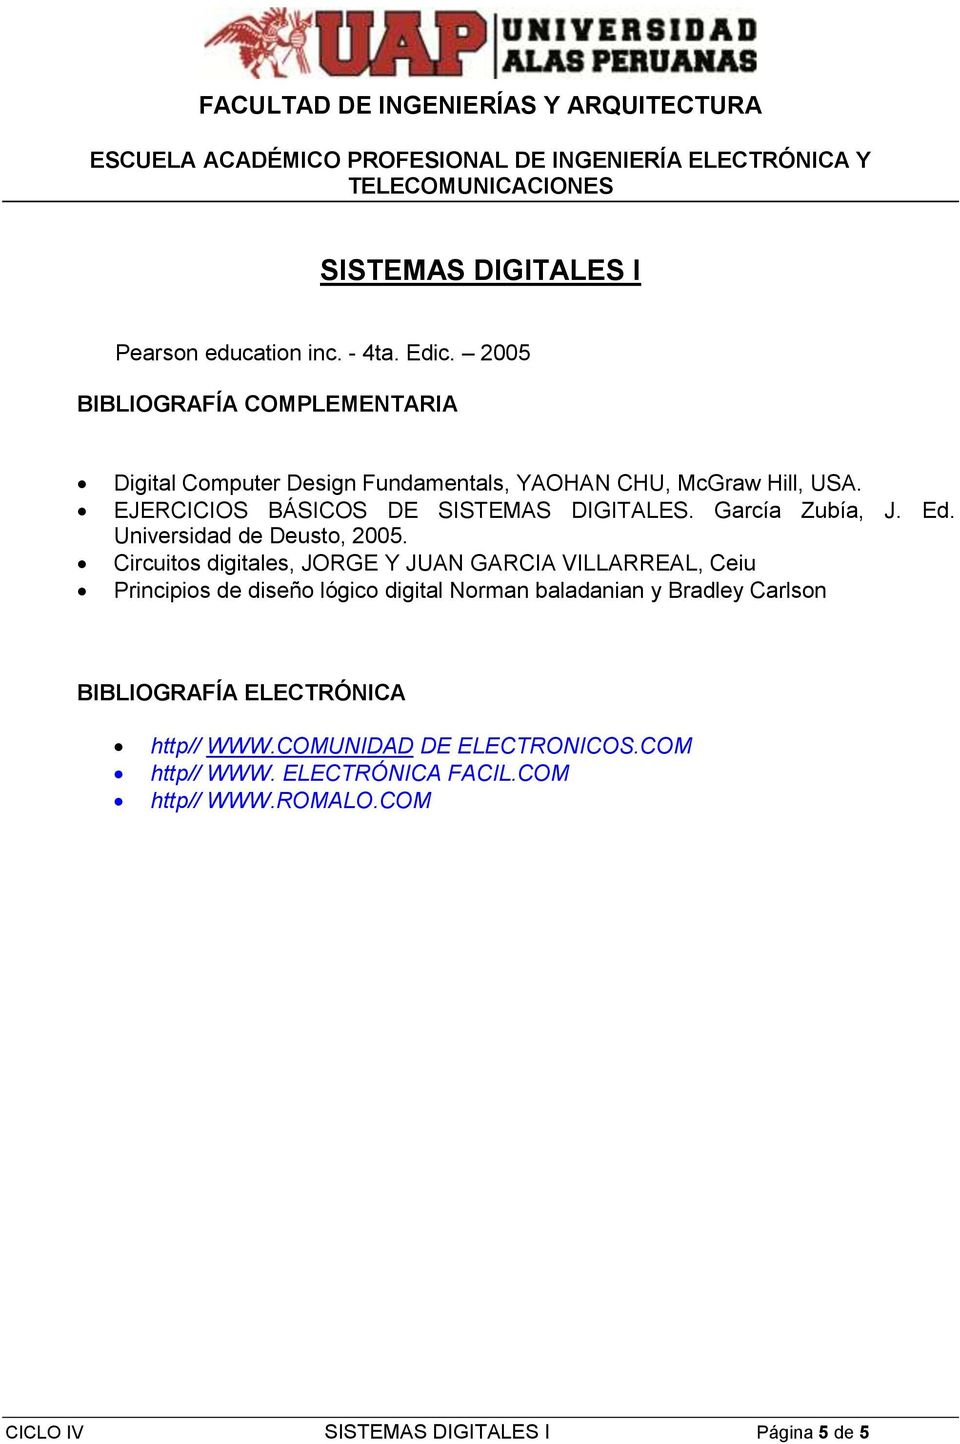 EJERCICIOS BÁSICOS DE SISTEMAS DIGITALES. García Zubía, J. Ed. Universidad de Deusto, 2005.